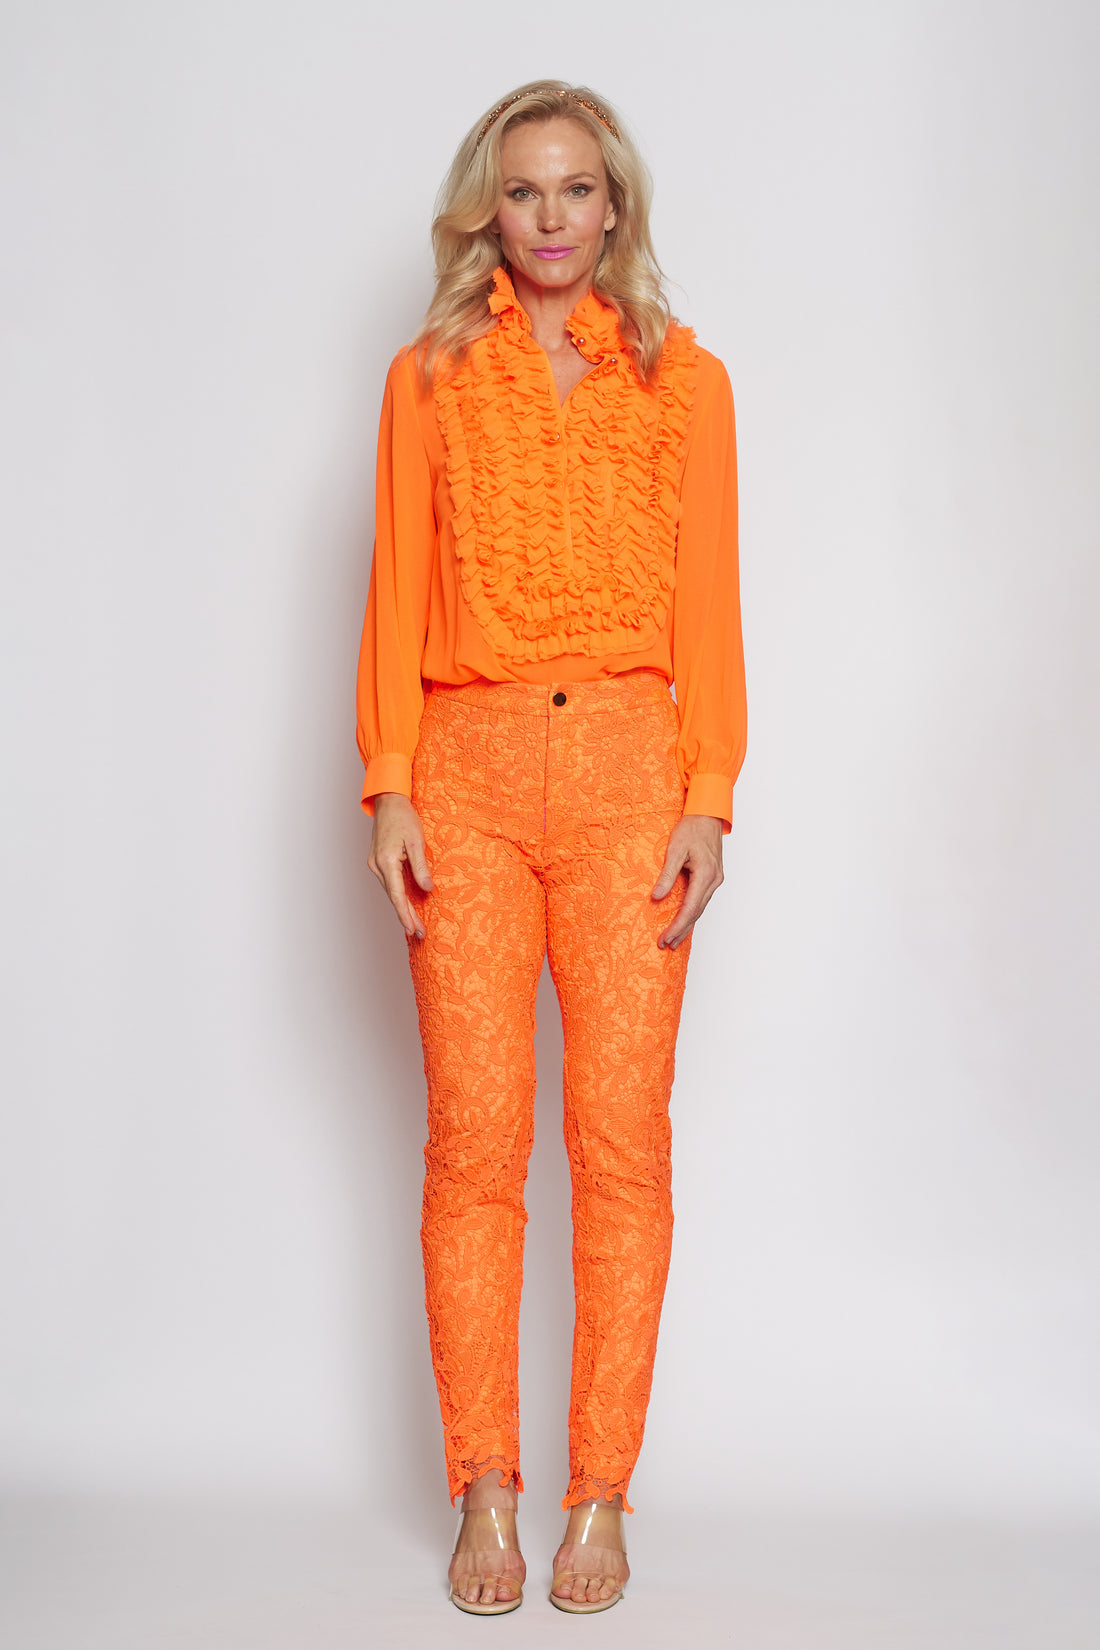 Neon Orange Lace Pant